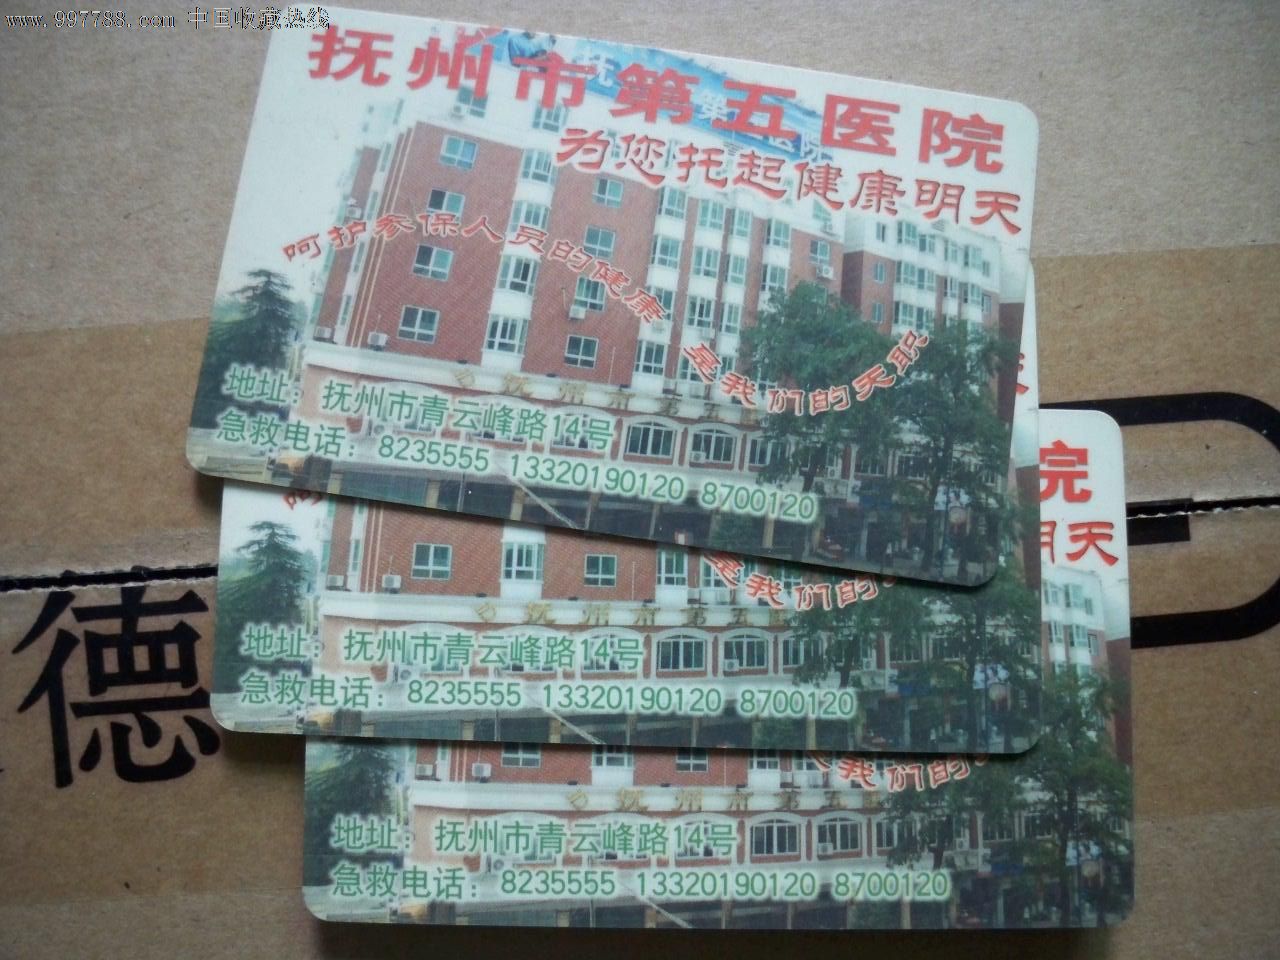 已经作废的江西省抚州市医疗保险卡(芯片与其